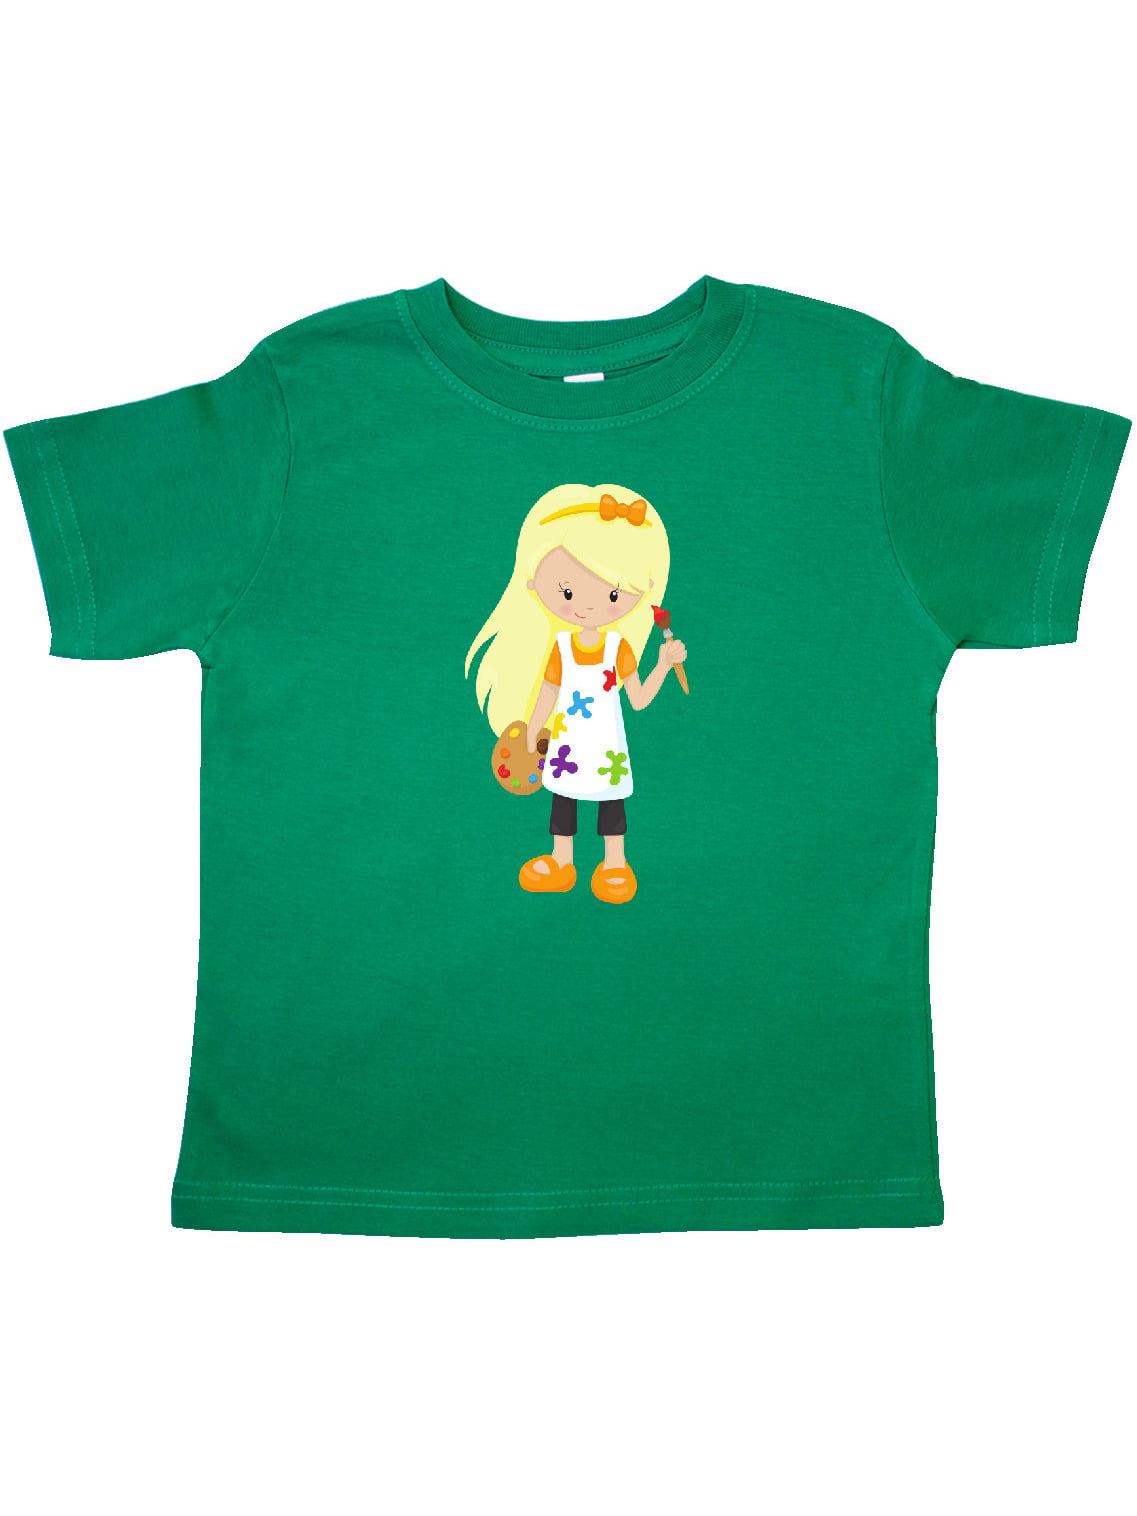 Paint Artist Toddler T-Shirt inktastic Cute Girl Painter Blonde Hair